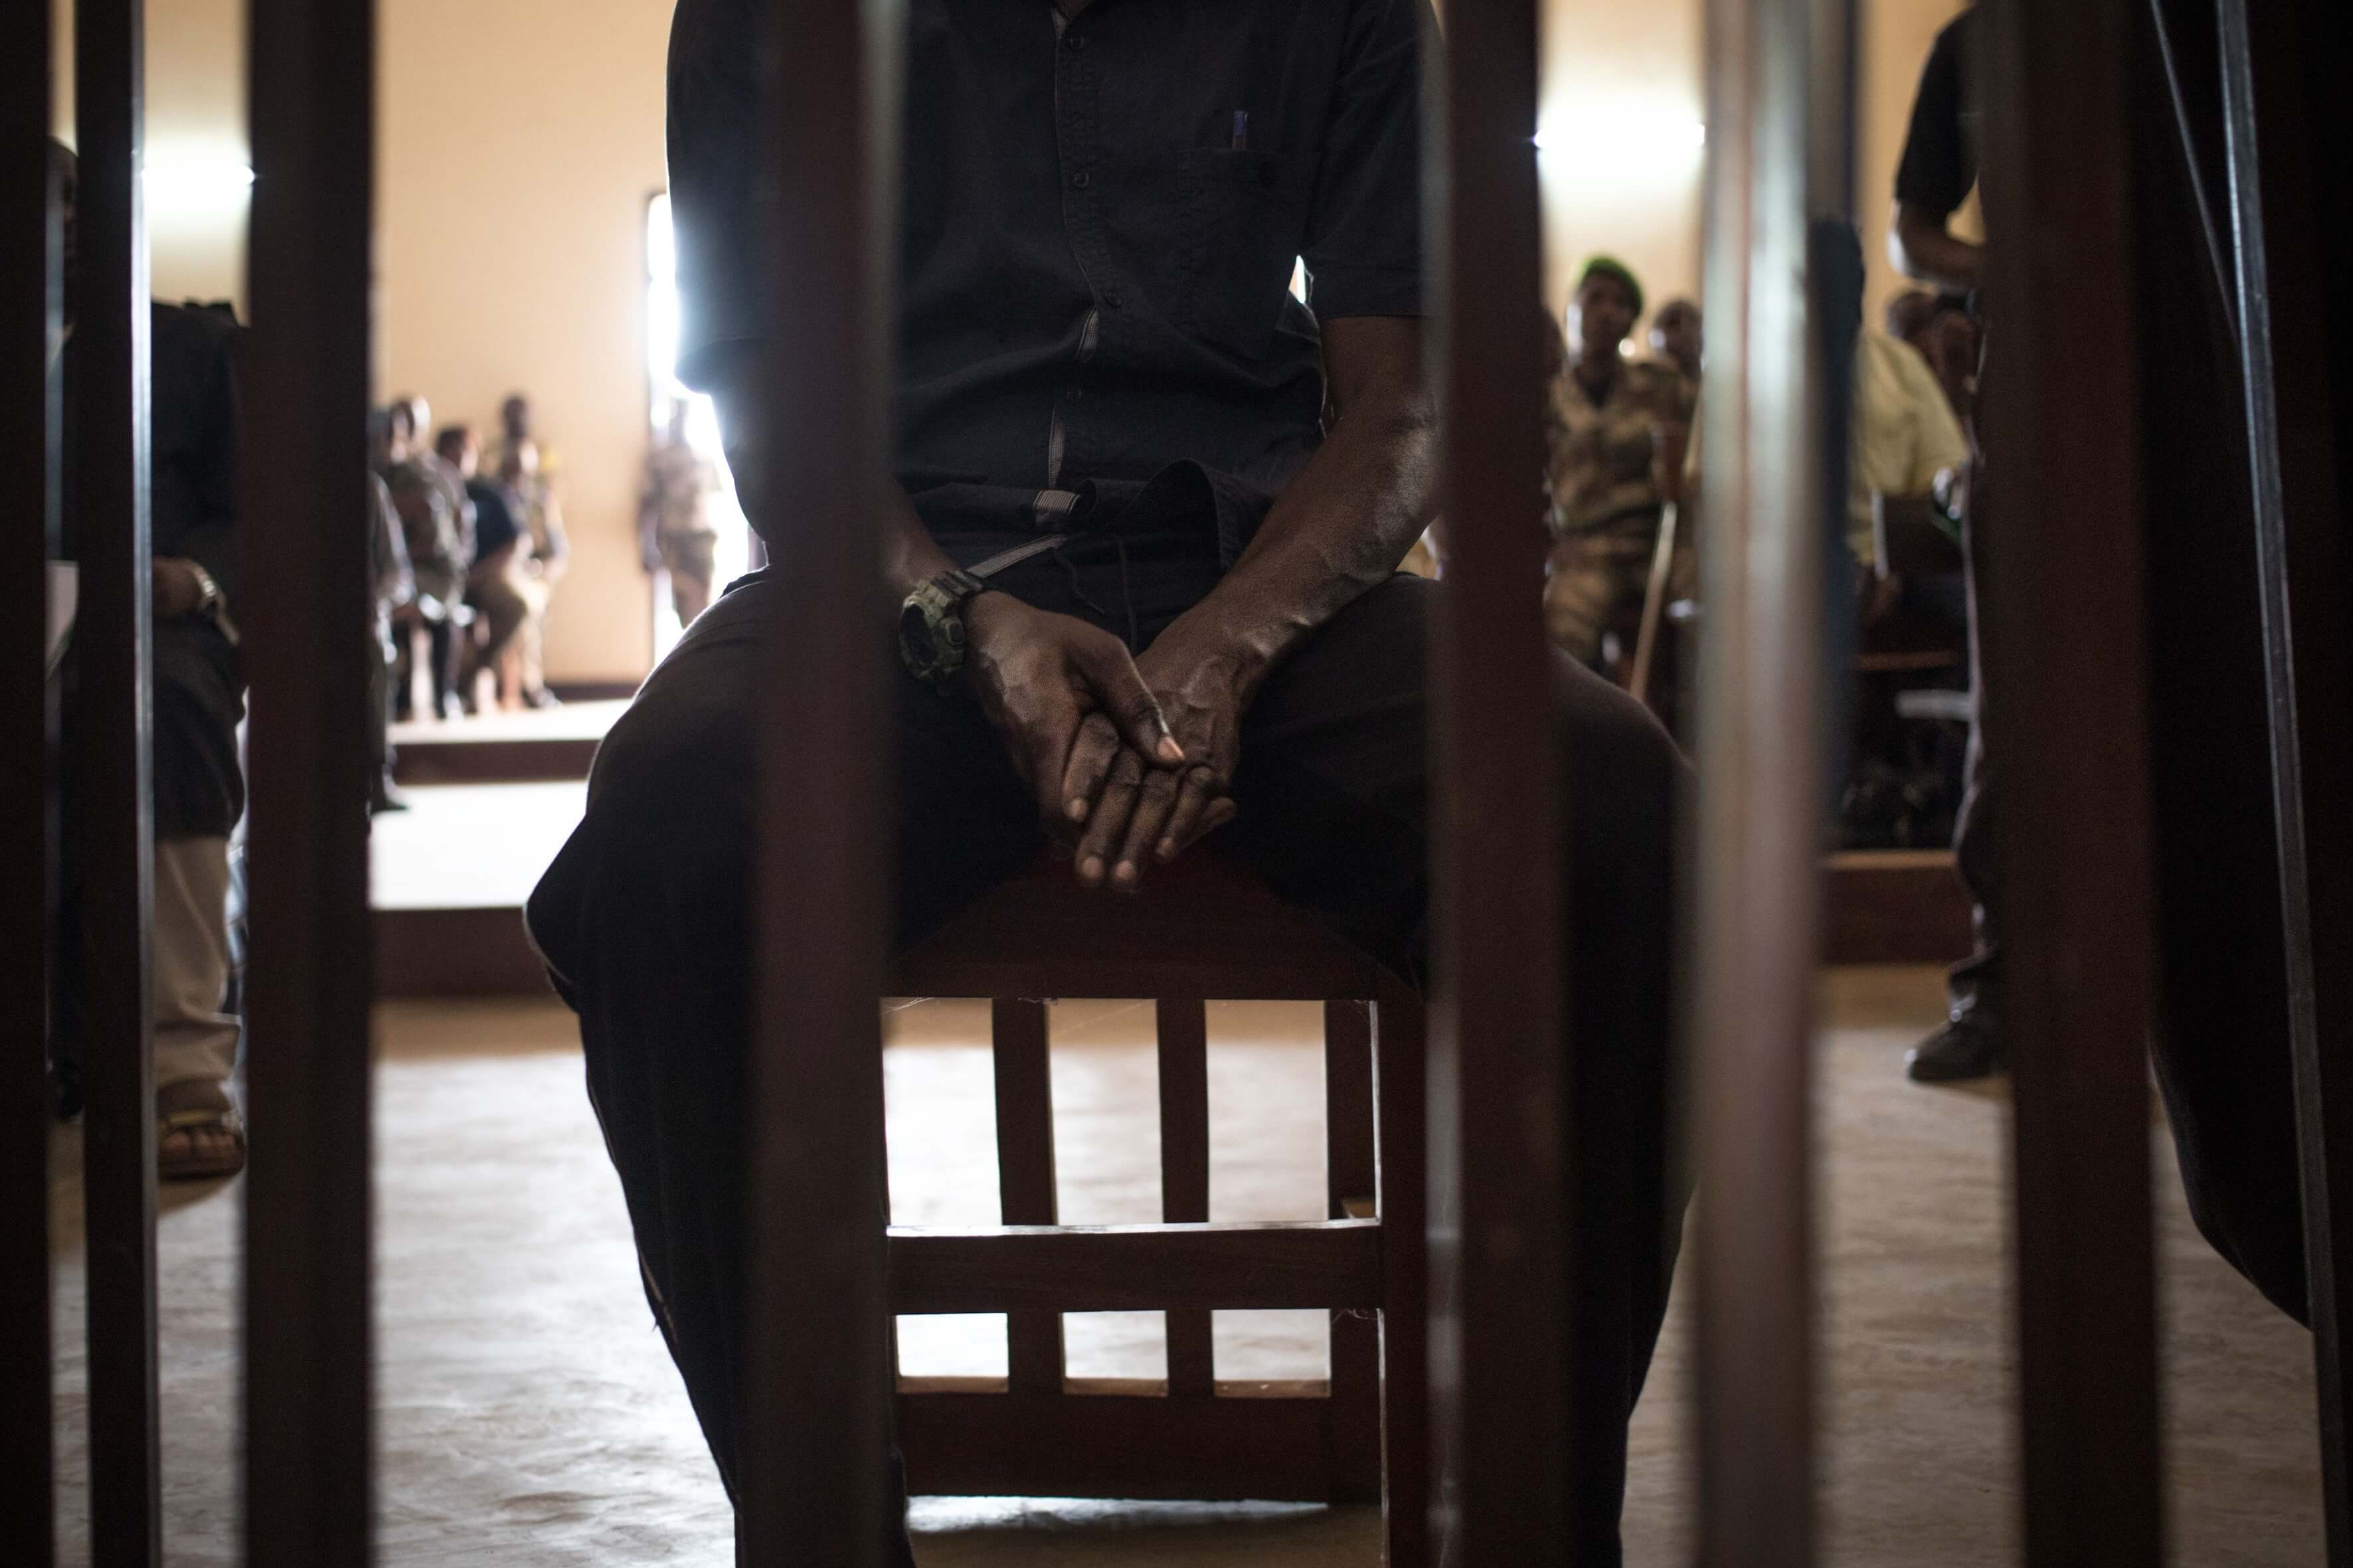 Kevin Bere-Bere, un ancien lieutenant de la milice anti-balaka de Bangassou, se tord les mains devant le tribunal où il est jugé pour sa responsabilité dans le massacre de dizaines de civils en 2017 et le meurtre de 10 soldats de la paix dans le sud-est de la République centrafricaine, au tribunal pénal de Bangui le 15 janvier 2020. - Deux chefs de milice et 29 de leurs hommes ont été jugés aujourd'hui en République centrafricaine pour le massacre de civils et de 10 soldats de la paix de l'ONU dans une ville du sud-est en 2017. Les 31 sont accusés d'avoir attaqué un quartier de Bangassou et une base de l'ONU voisine le 13 mai 2017. Selon l'ONU, 72 personnes ont été tuées, 76 ont été blessées et 4 400 personnes ont fui leurs foyers.